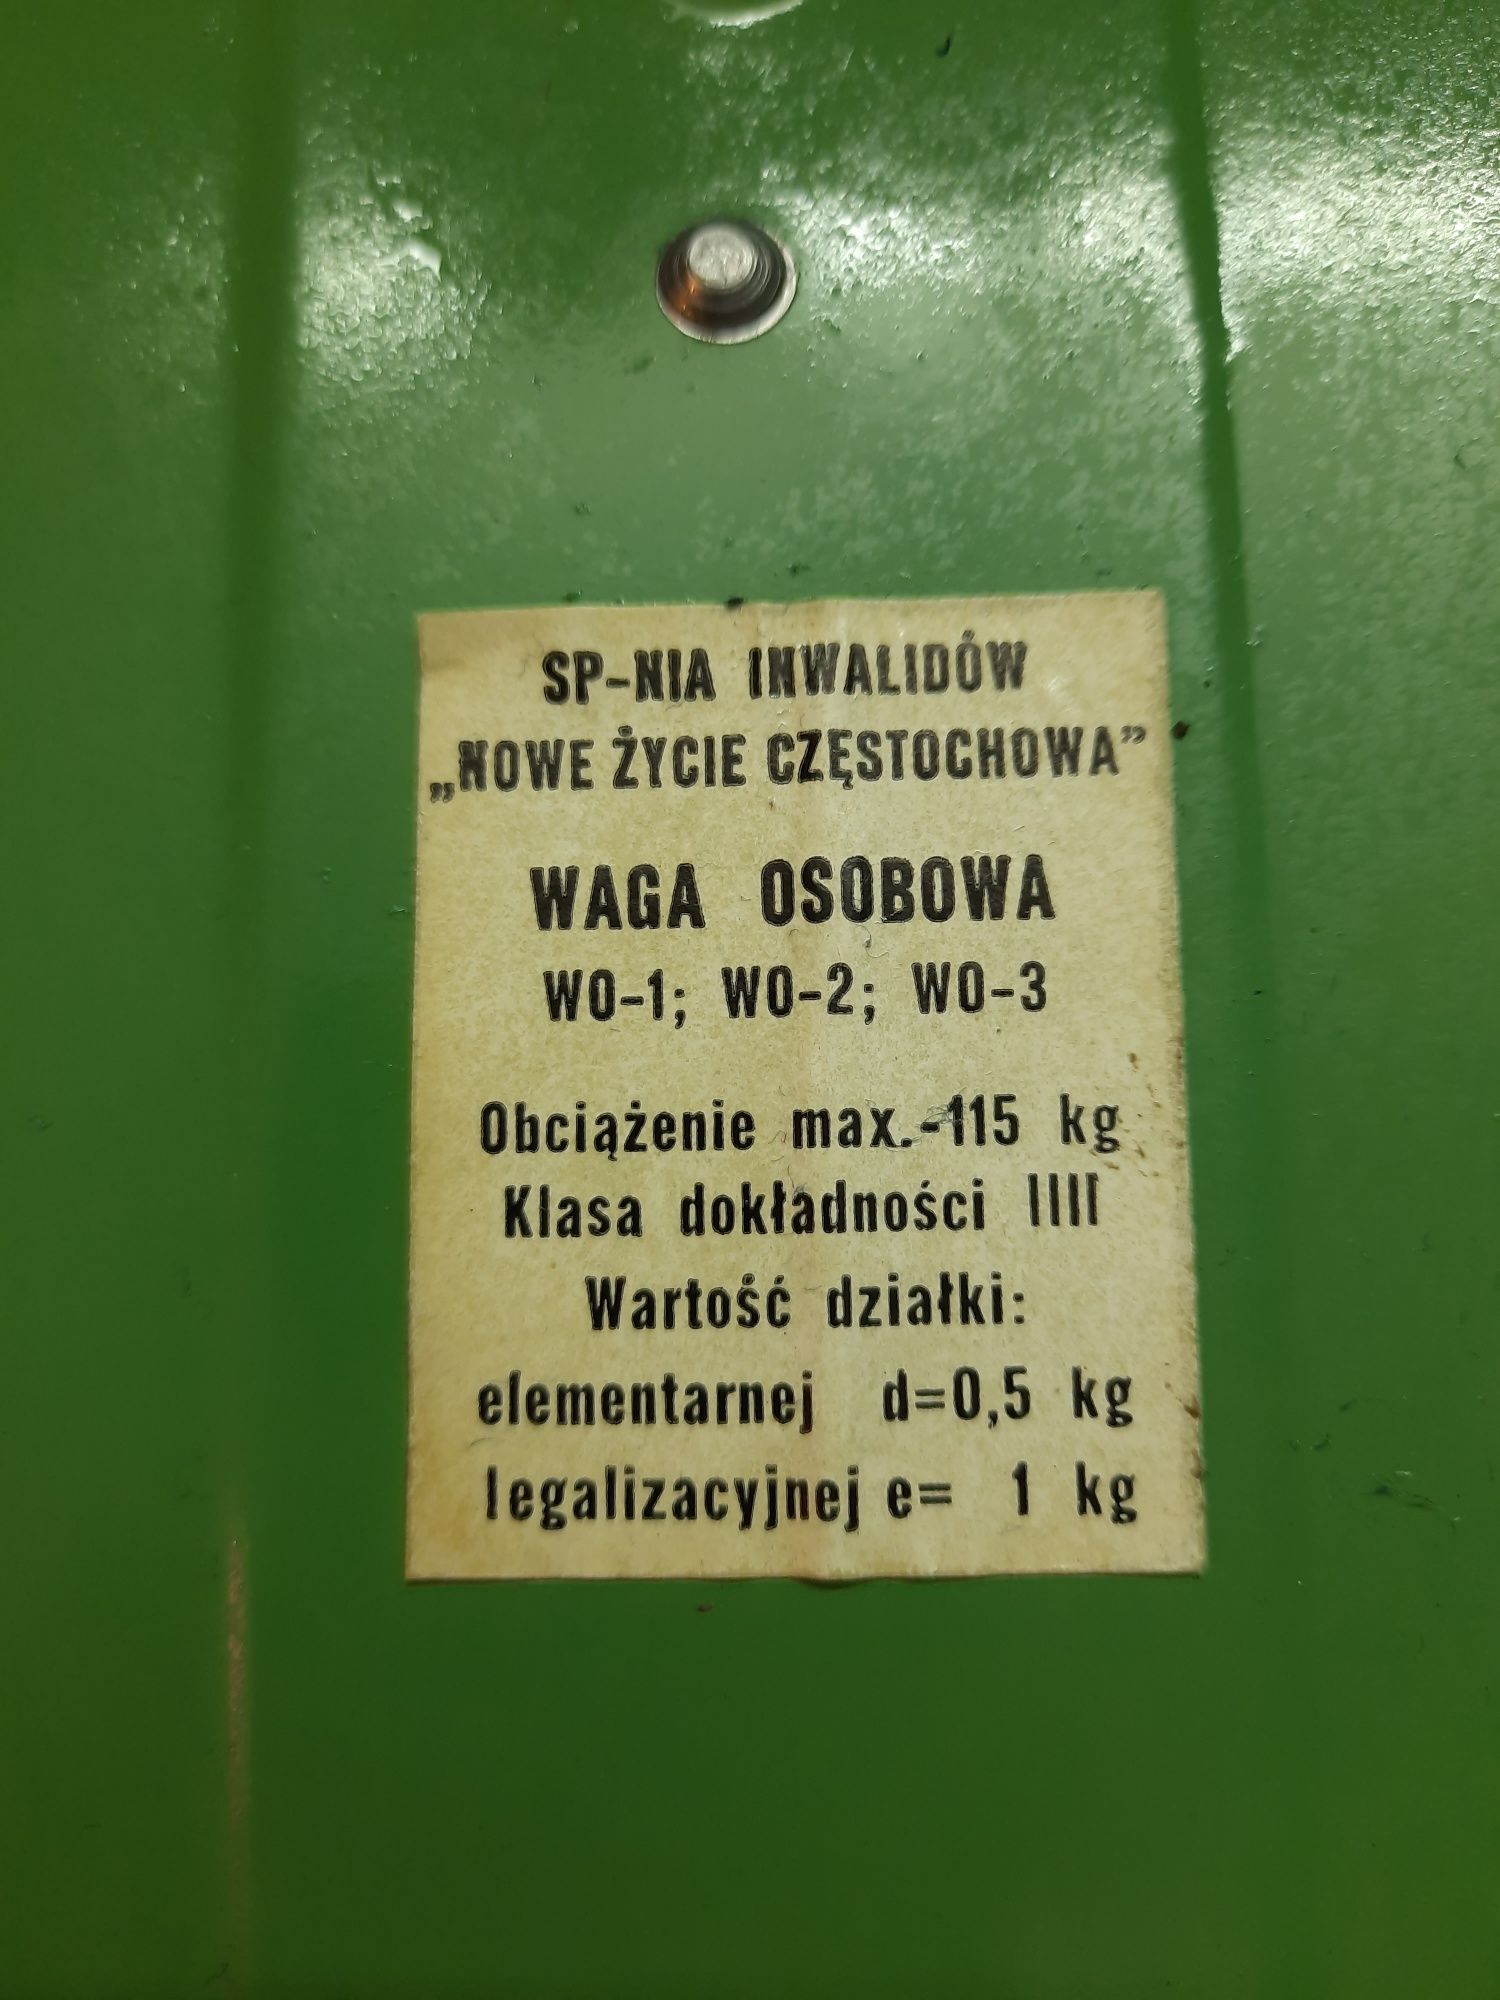 Waga łazienkowa retro PRL vintage Inowag Spółdzielnia Nowe Życie